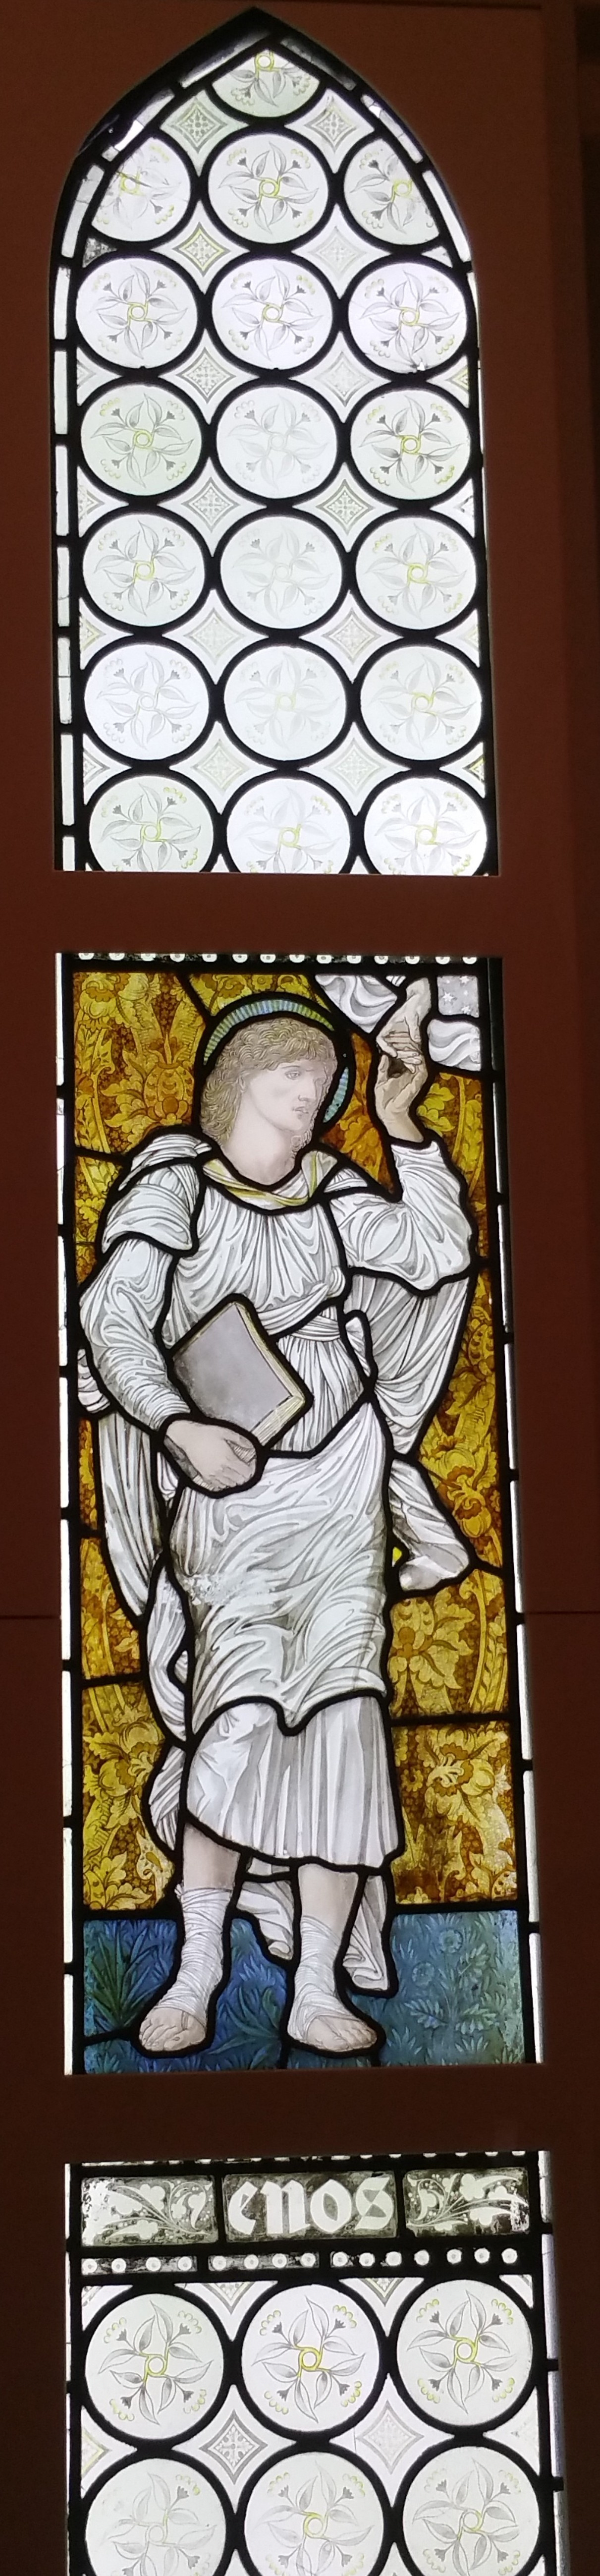 Ангел с книгой. Витражное окно в галерее Уильяма Морриса в Лондоне